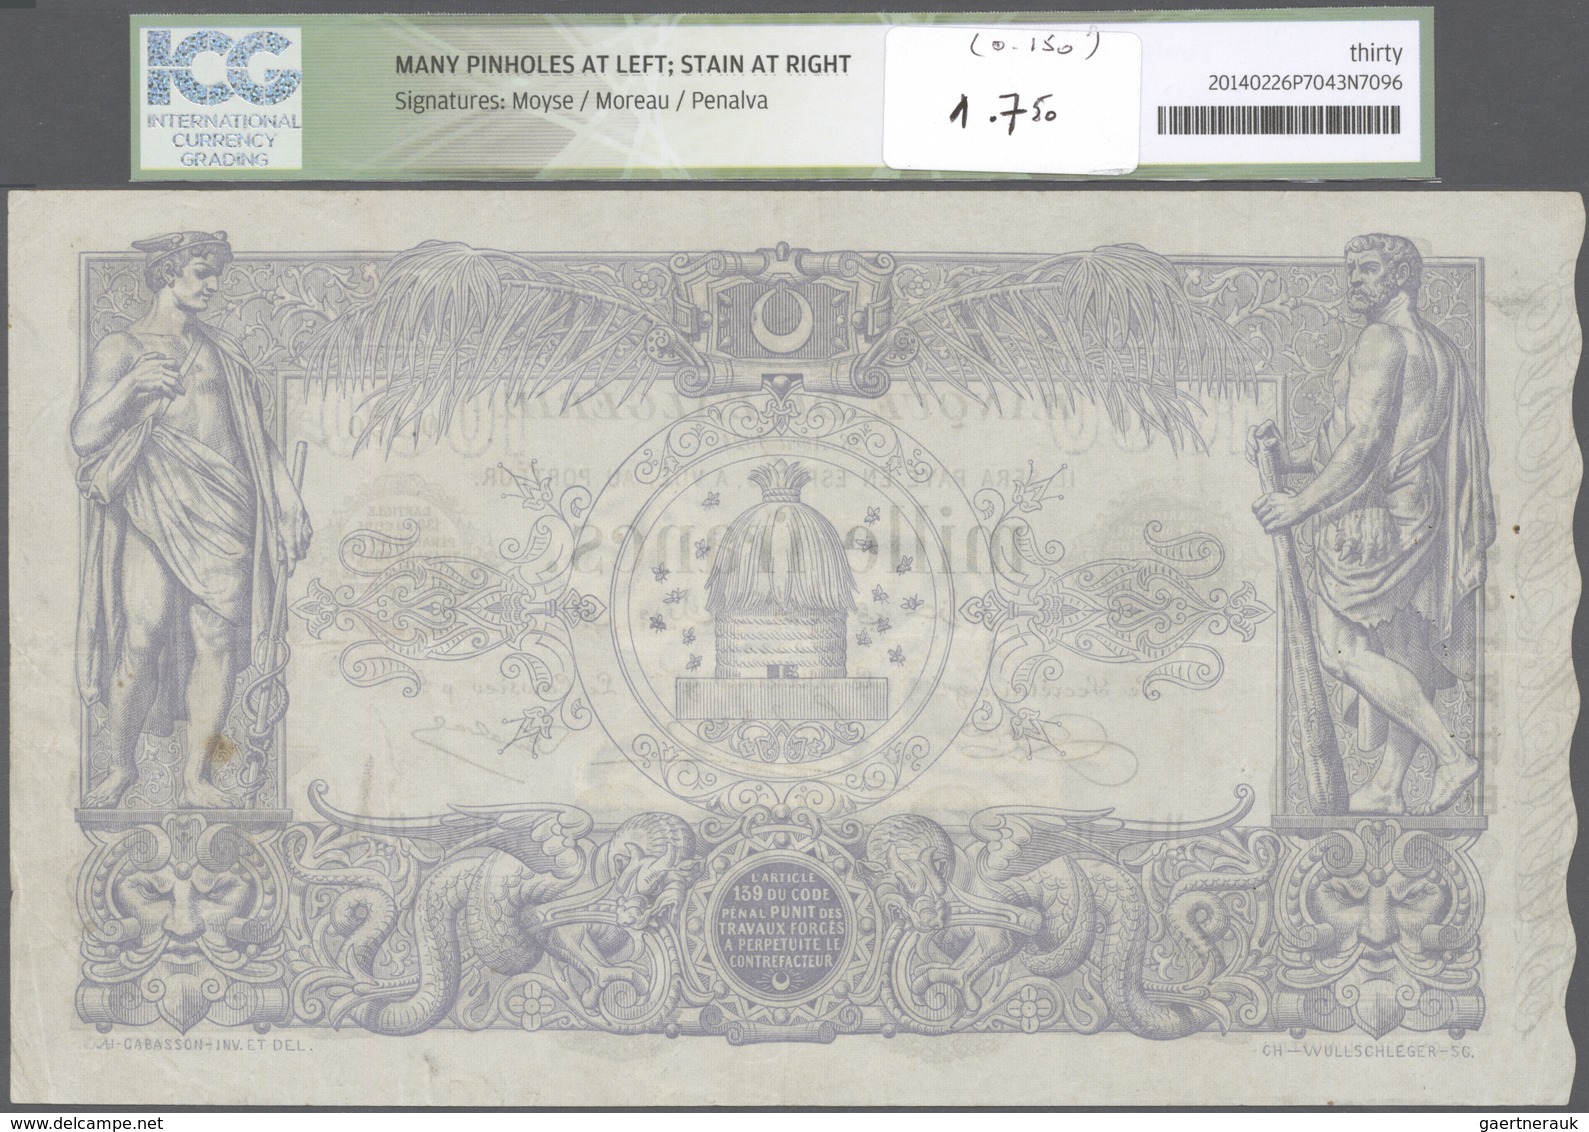 02501 Tunisia / Tunisien: 1000 Francs 1924 P. 7b, In Condition: ICG Graded 30* VF. - Tunisia